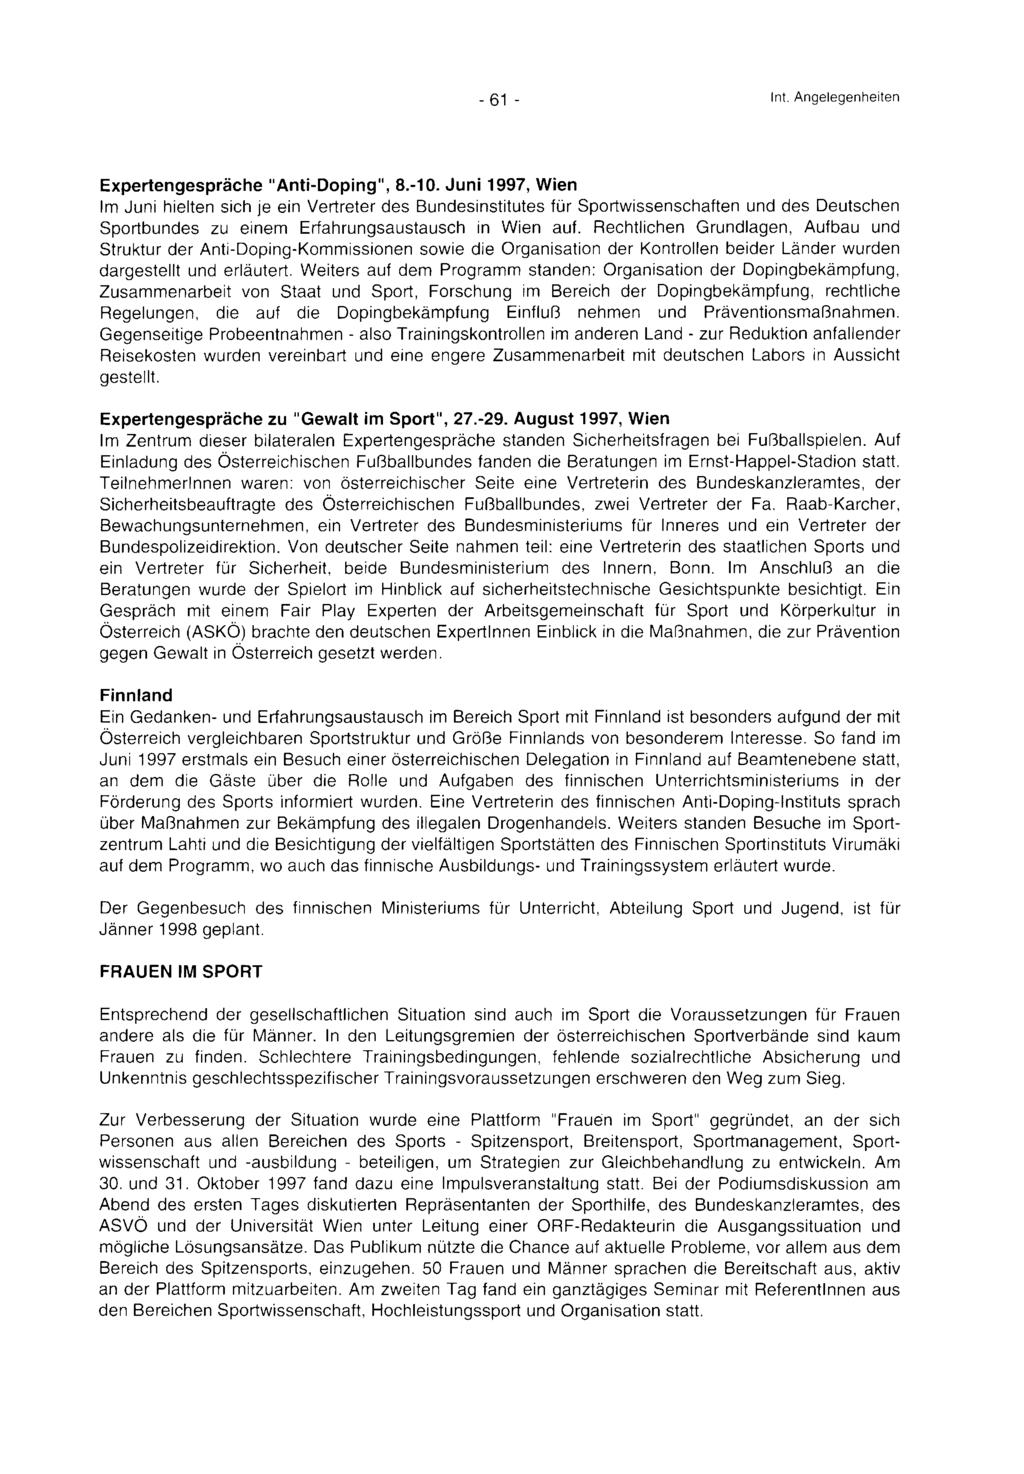 III-173 der Beilagen XX. GP - Bericht - 02 Hauptdokument (gescanntes Original) 61 von 185-61 - Int. Angelegenheiten Expertengespräche "Anti-Doping", 8.-10.